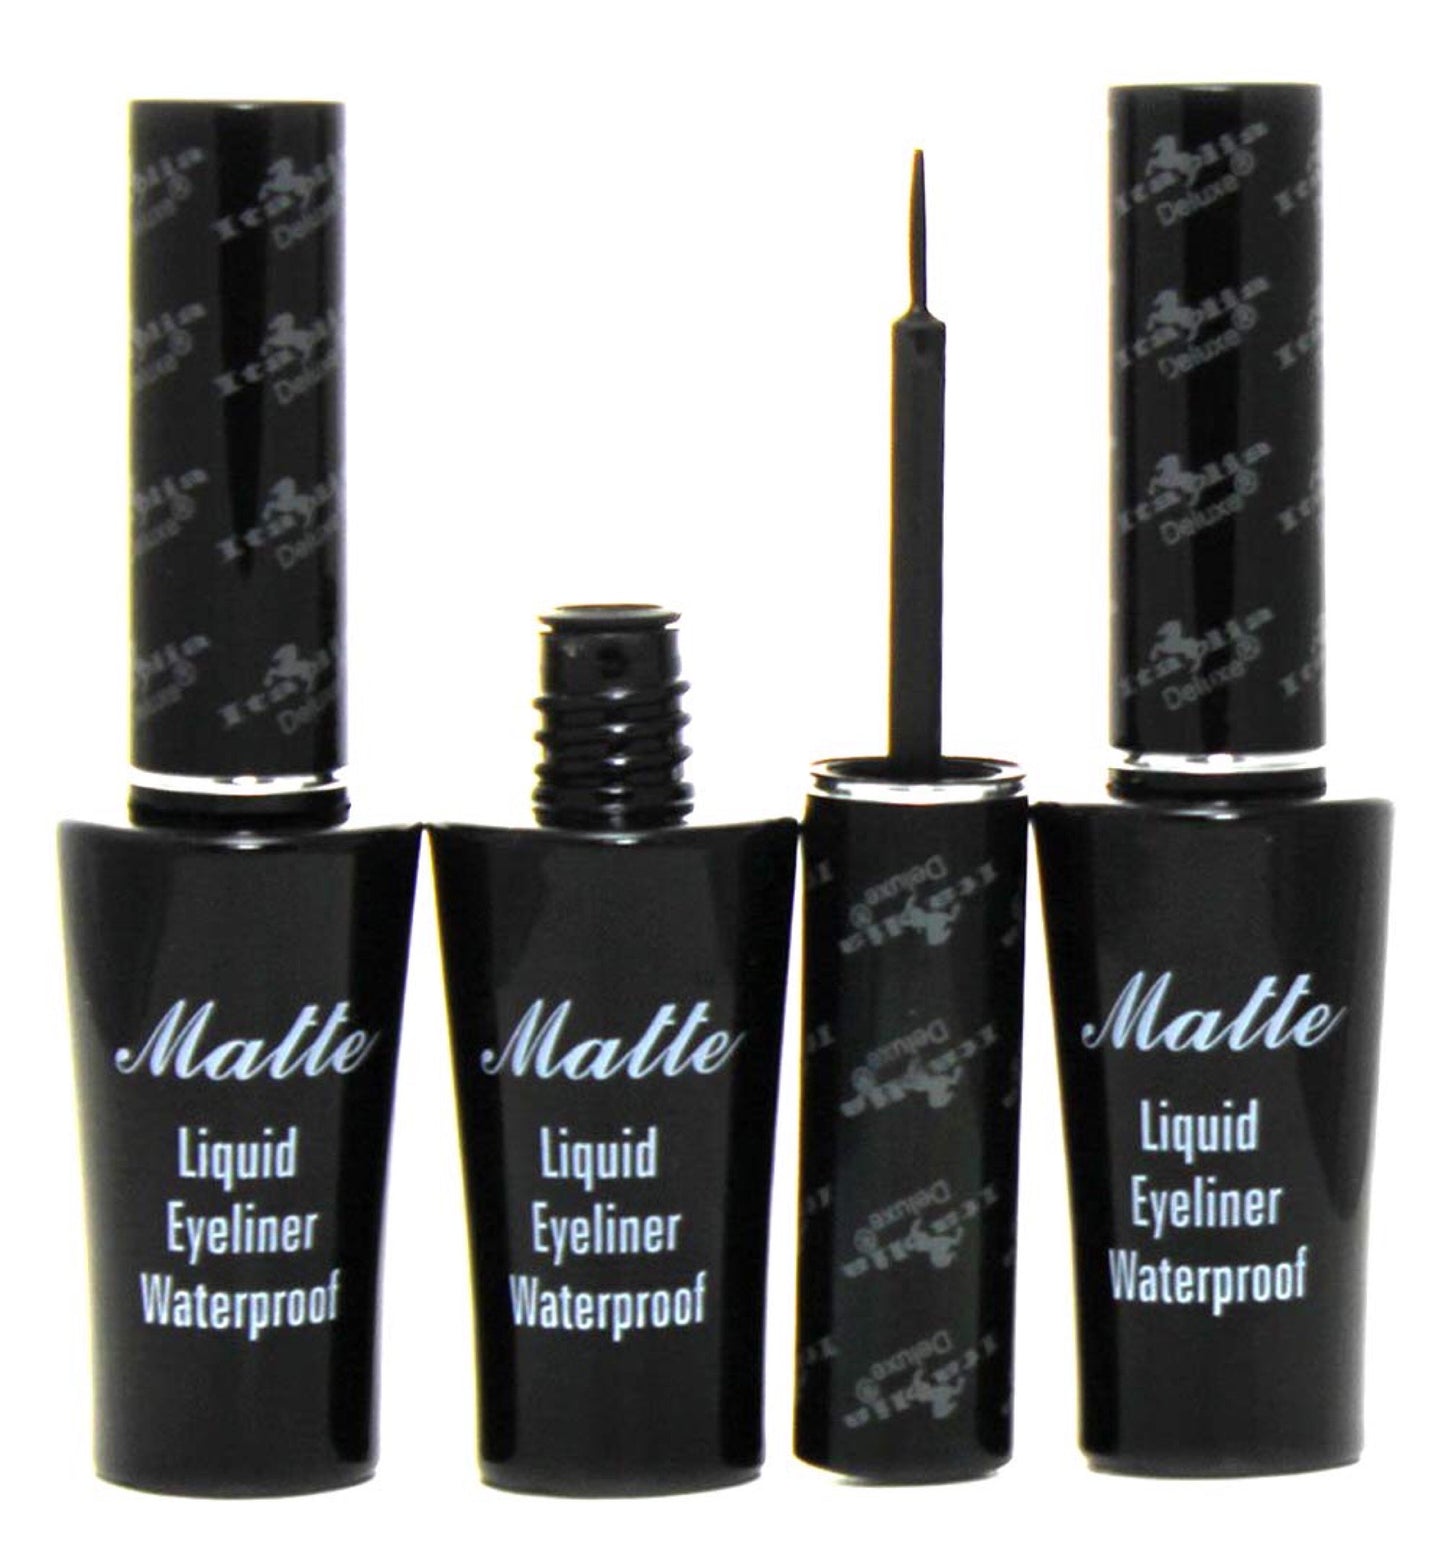 Matte Liquid Eyeliner Waterproof